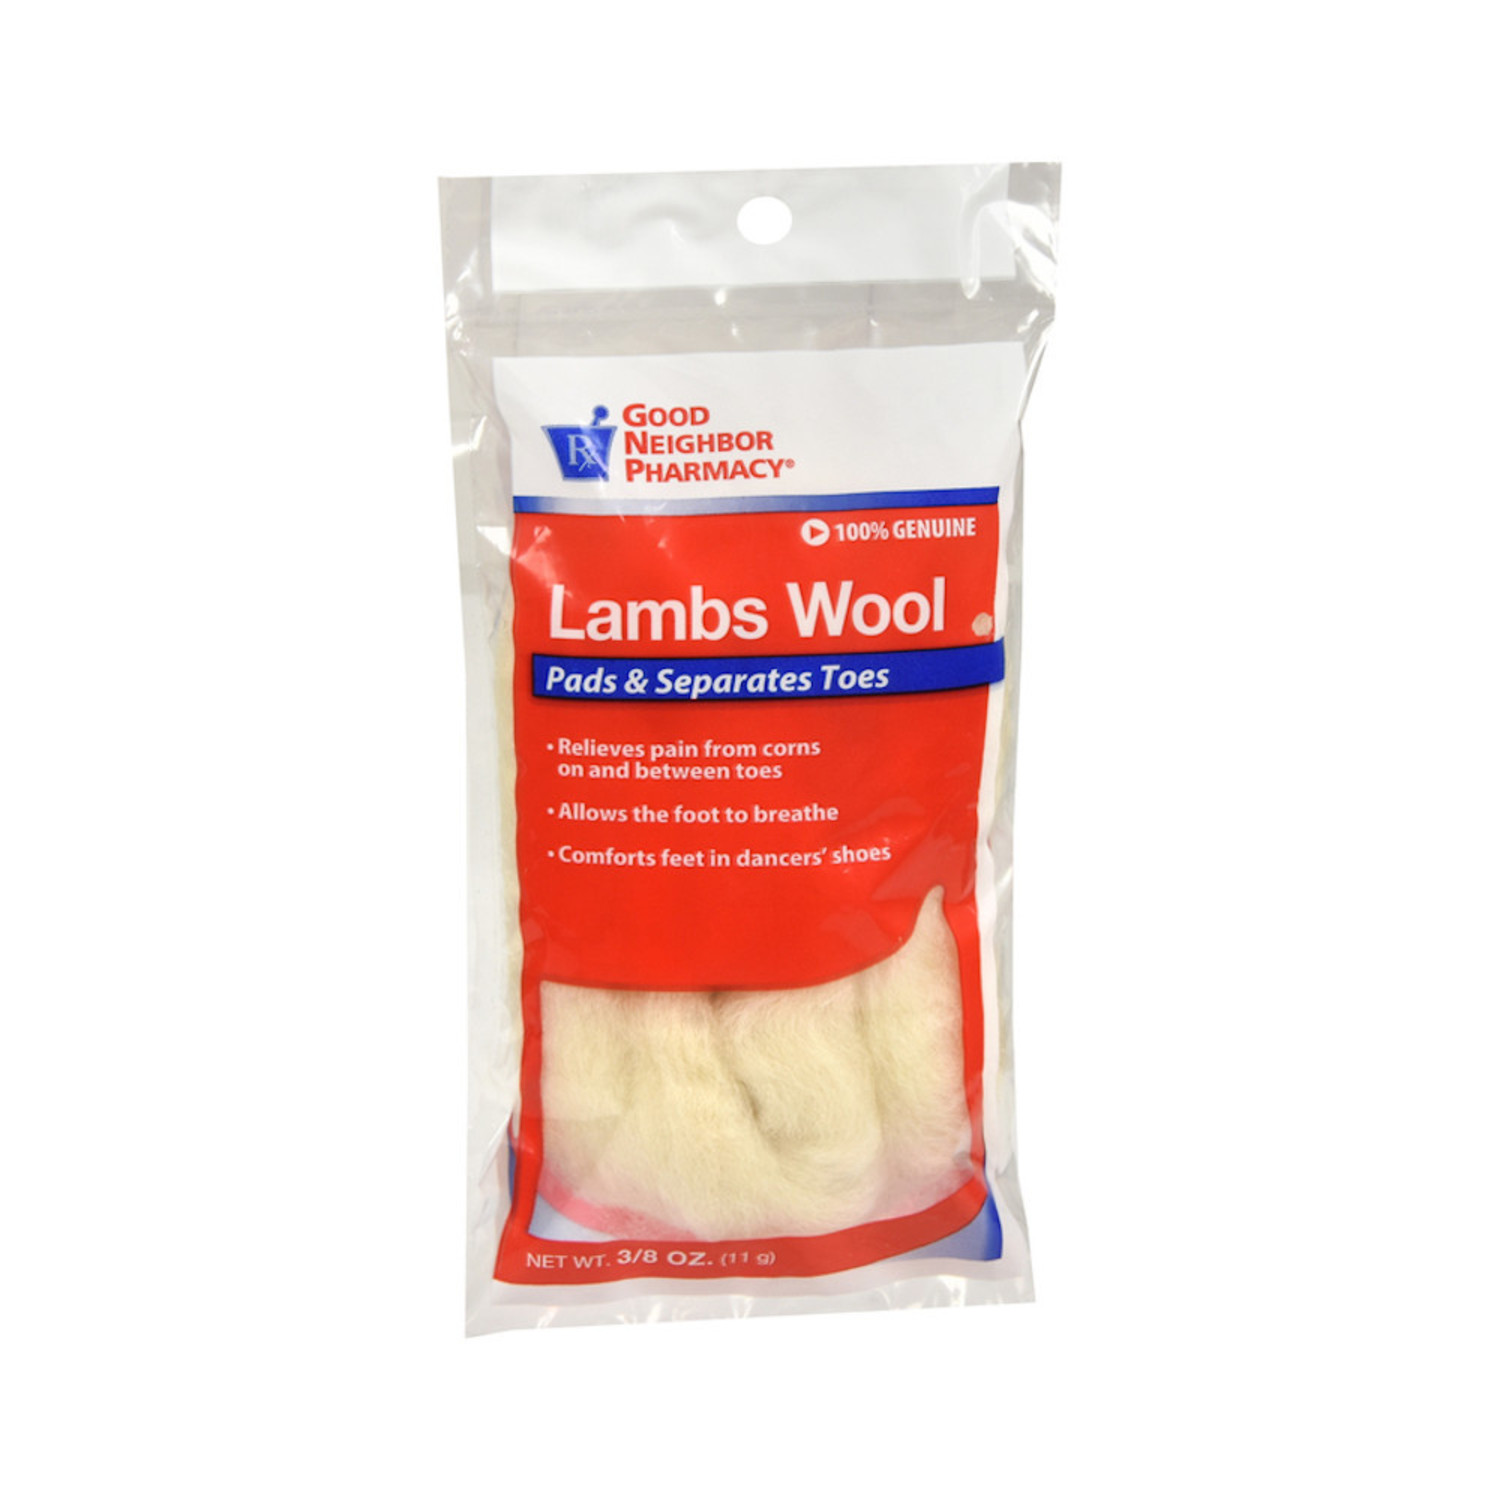 Buy GoodSense Lambs Wool Padding